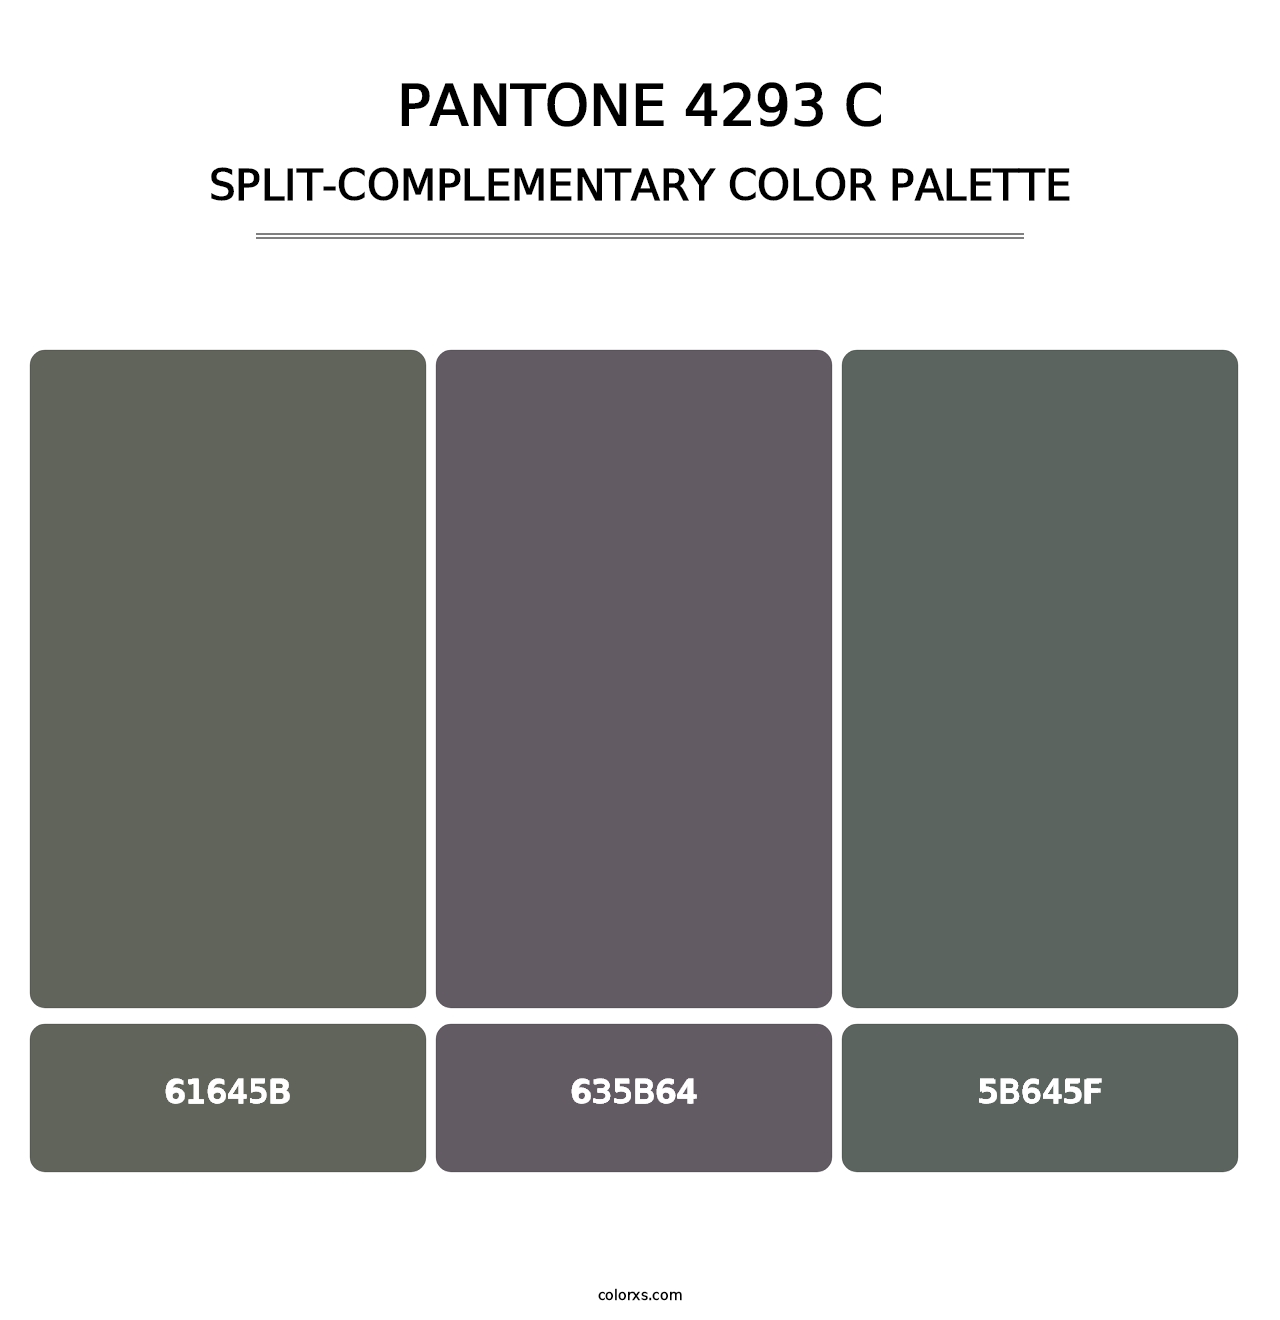 PANTONE 4293 C - Split-Complementary Color Palette